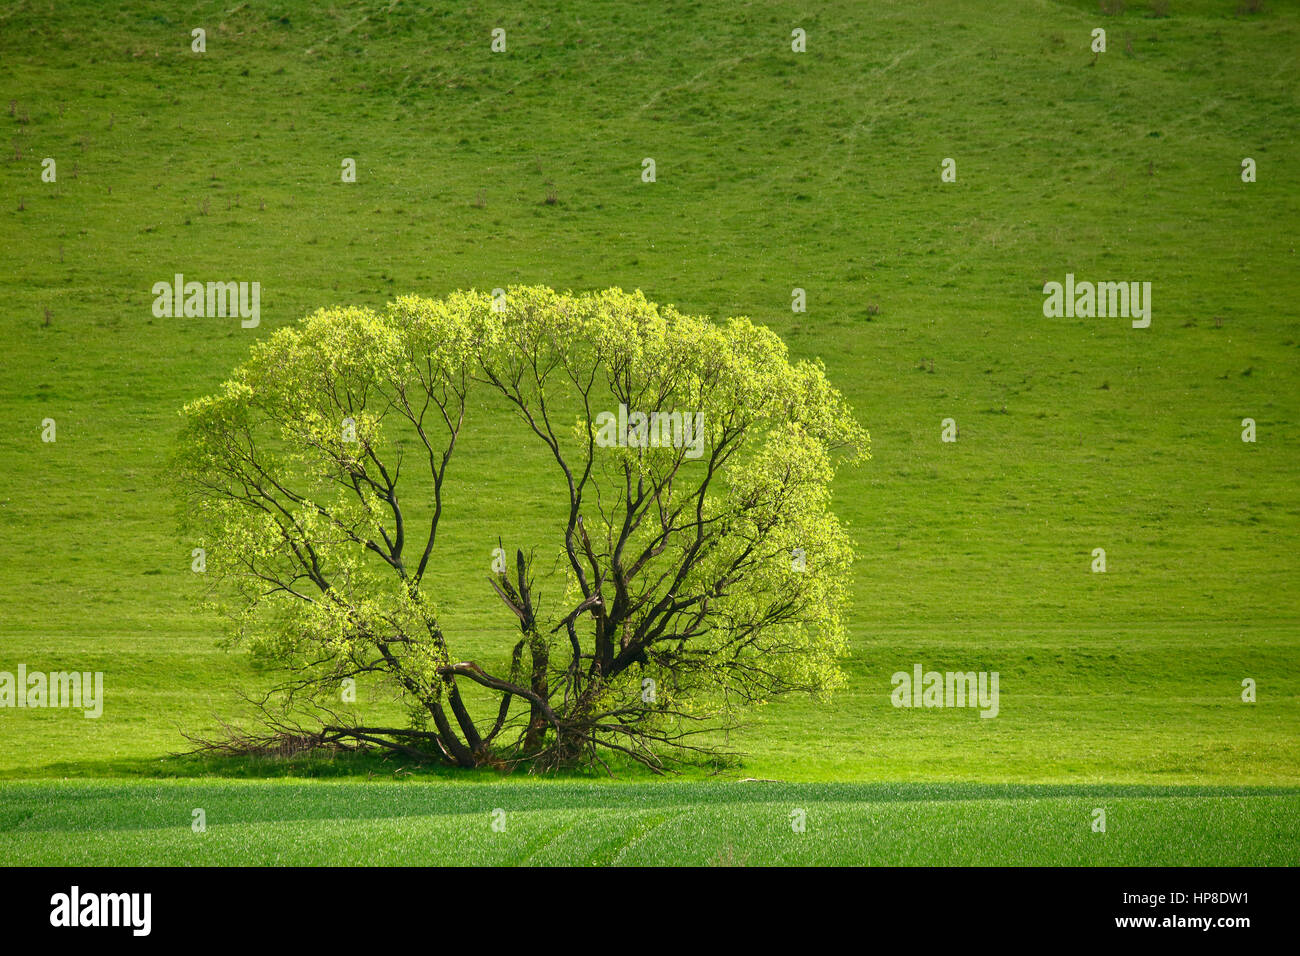 Ein grüner Baum auf Wiese. Frühling Sättigung Landschaft. Baum auf grünen Rasen Hintergrund. Freiraum für Text auf grünem Hintergrund. Stockfoto